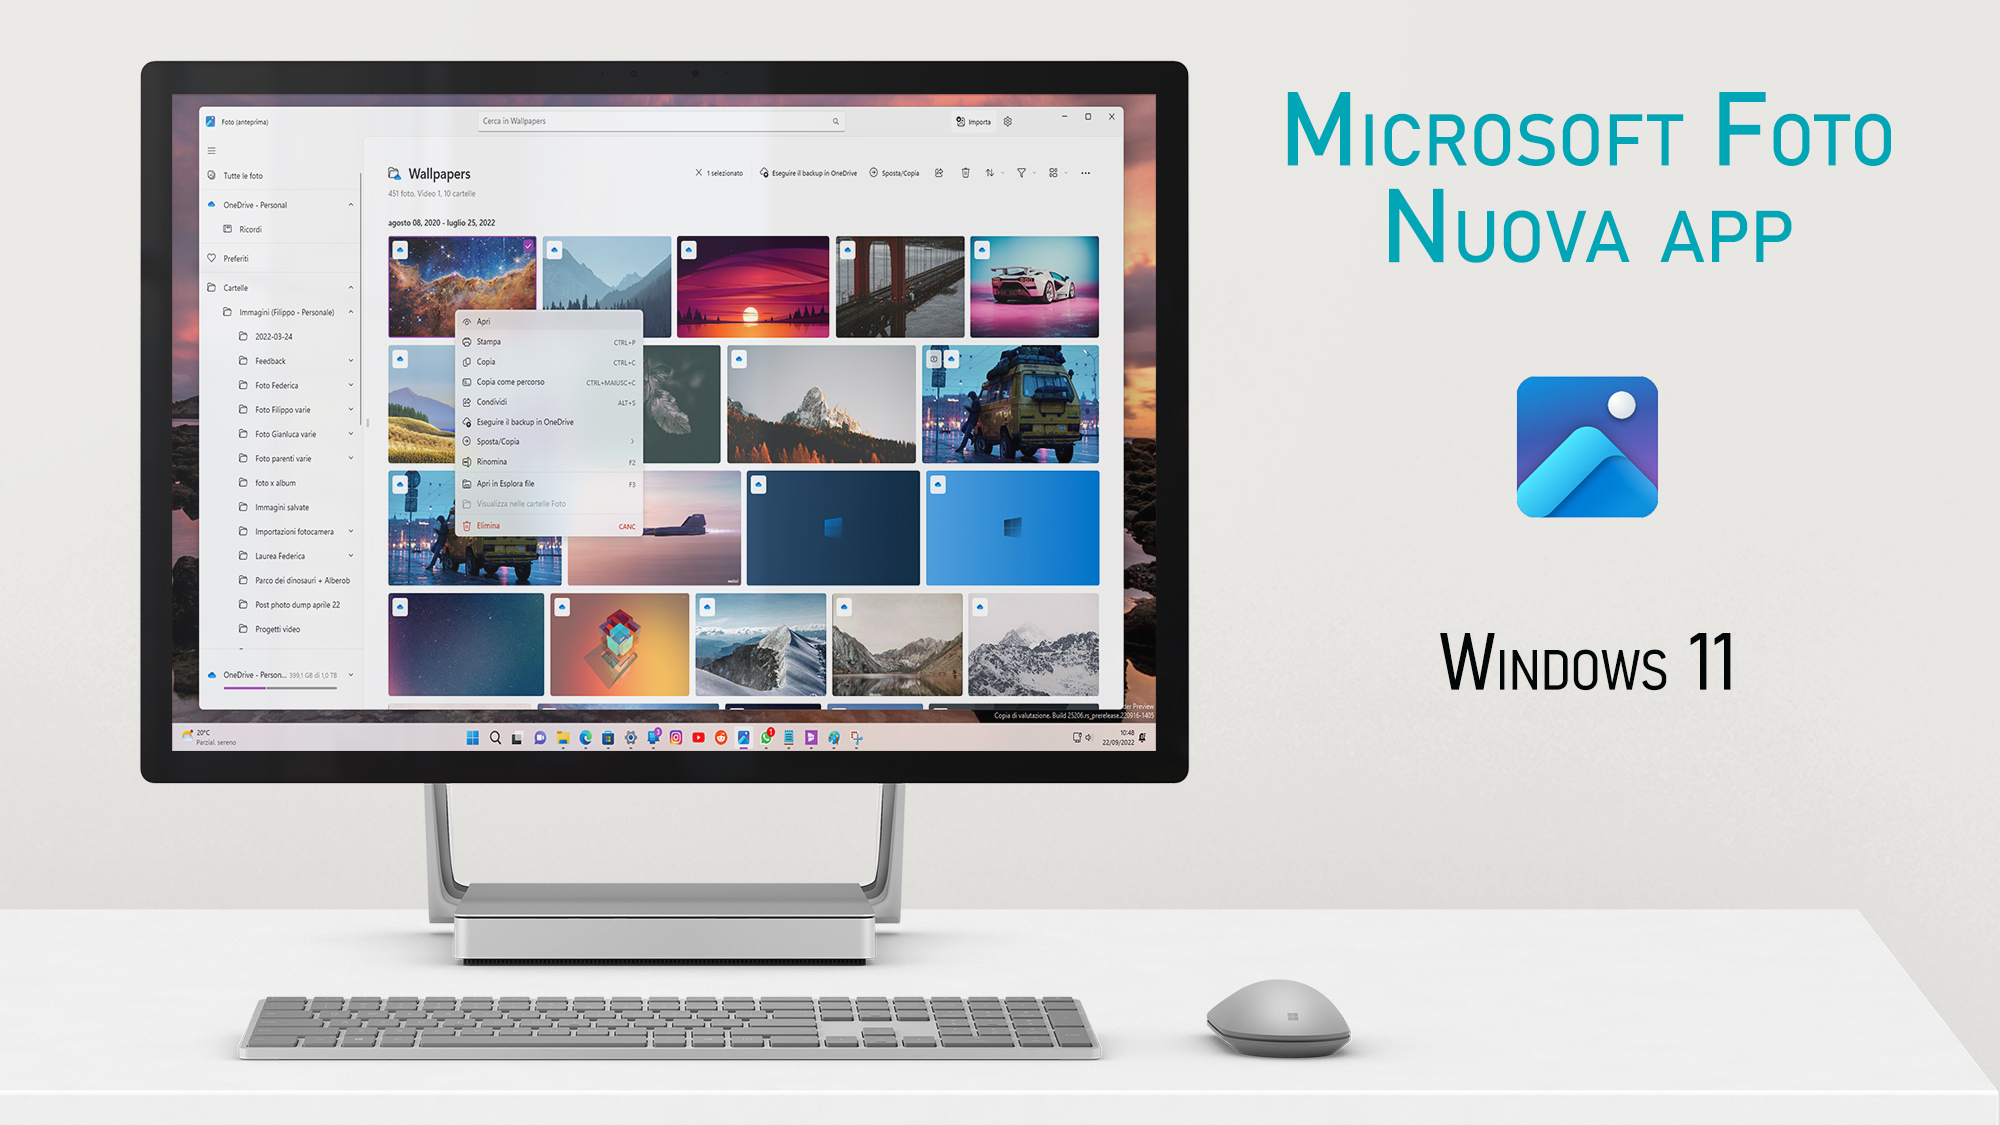 Microsoft Foto per Windows 11 versione 22H2